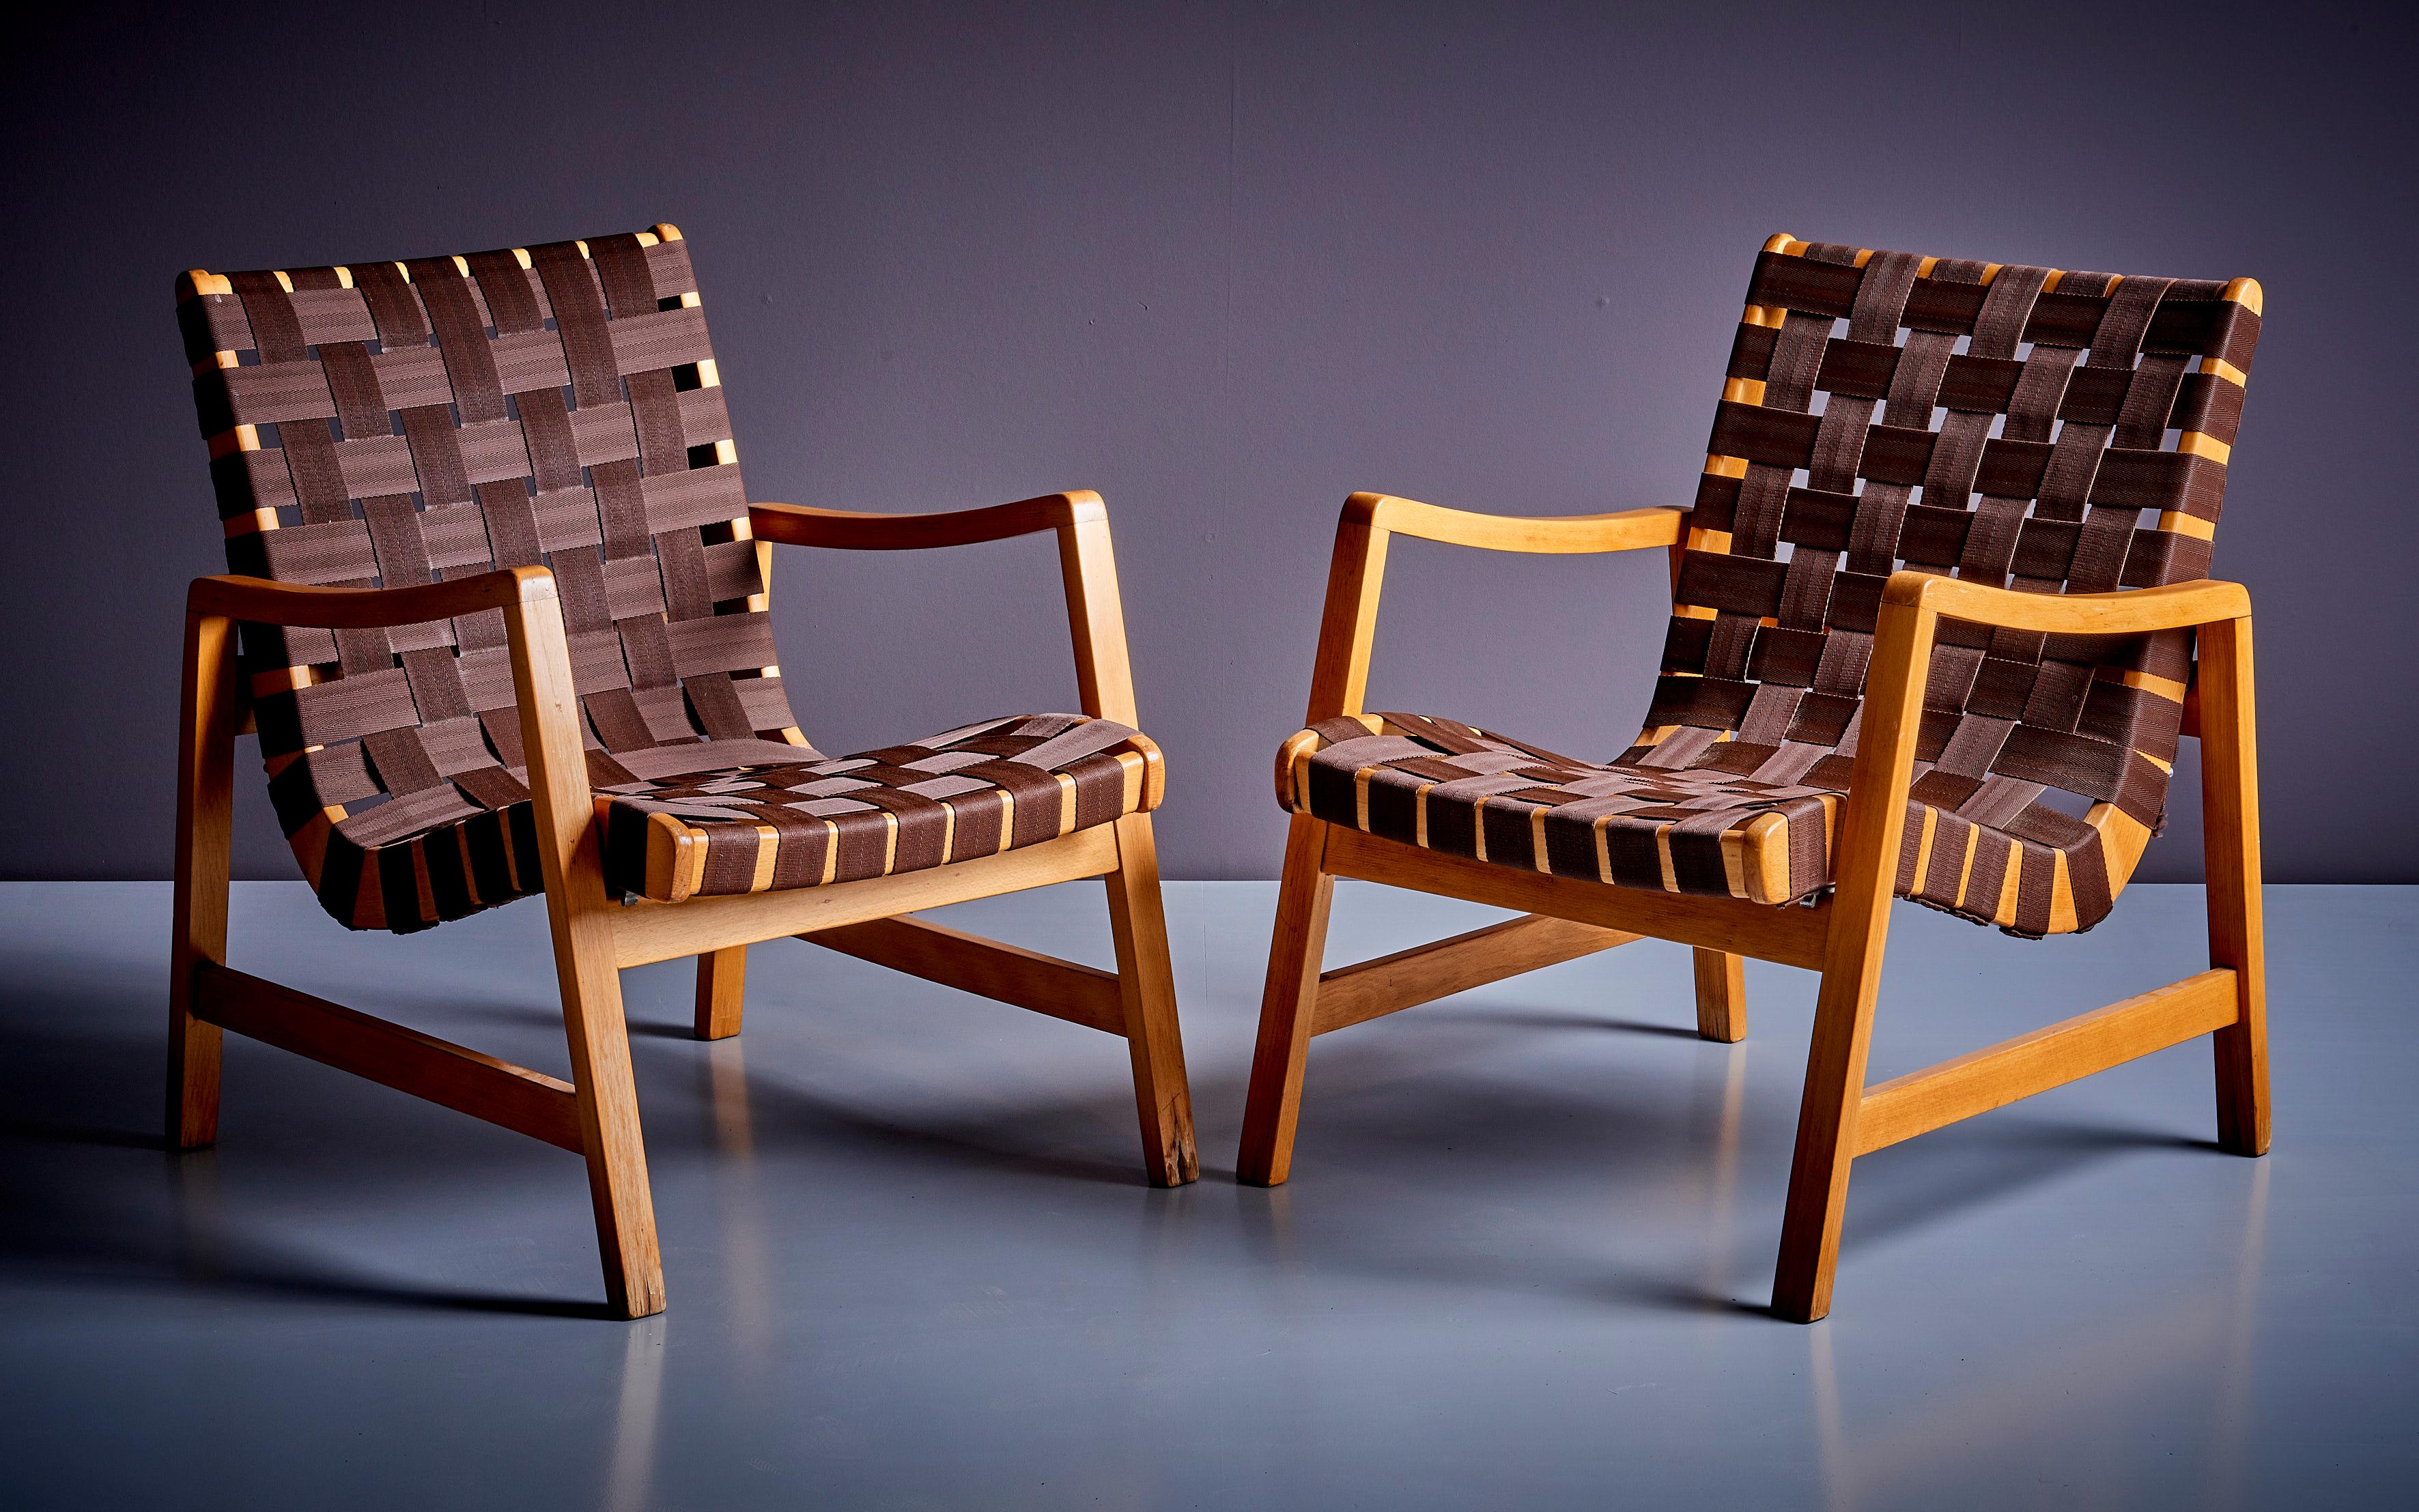 Paire de chaises longues Jens Risom en sangle brune pour Knoll. L'assise est amovible et réglable de la chaise longue à la chaise d'appoint.